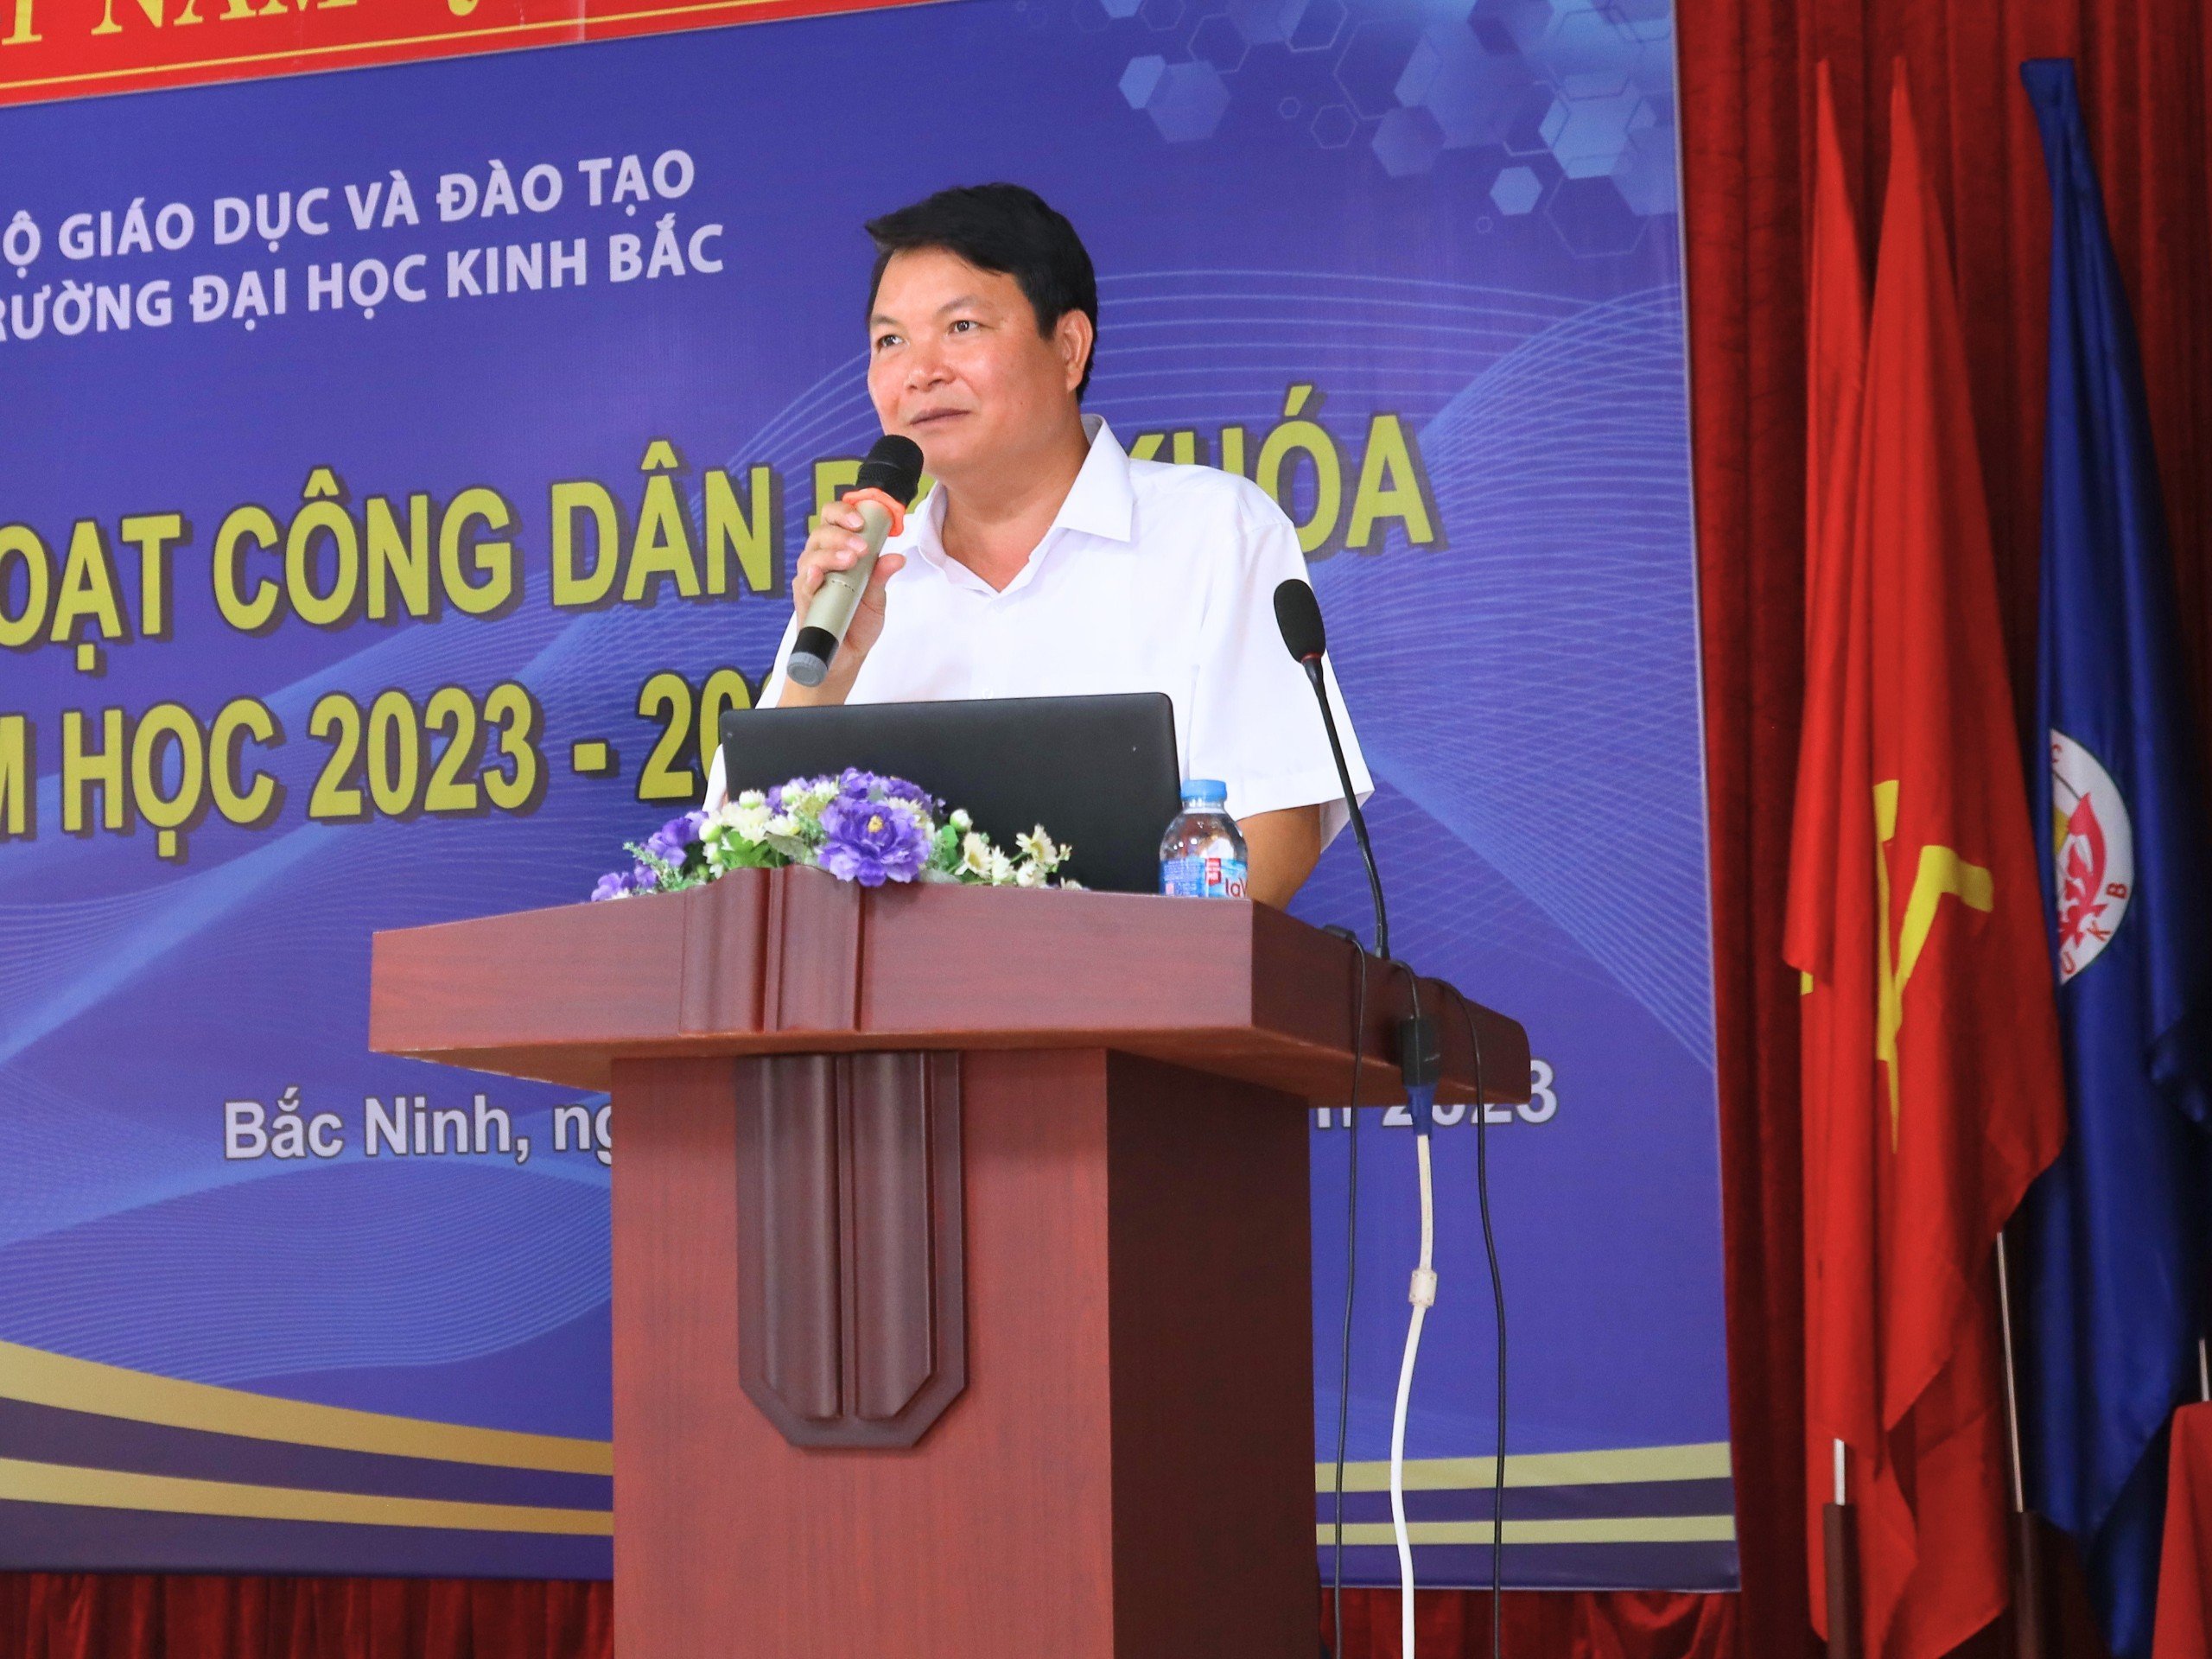 TS. Nguyễn Văn Hùng – Phó trưởng Ban Tuyên giáo Tỉnh ủy Bắc Ninh